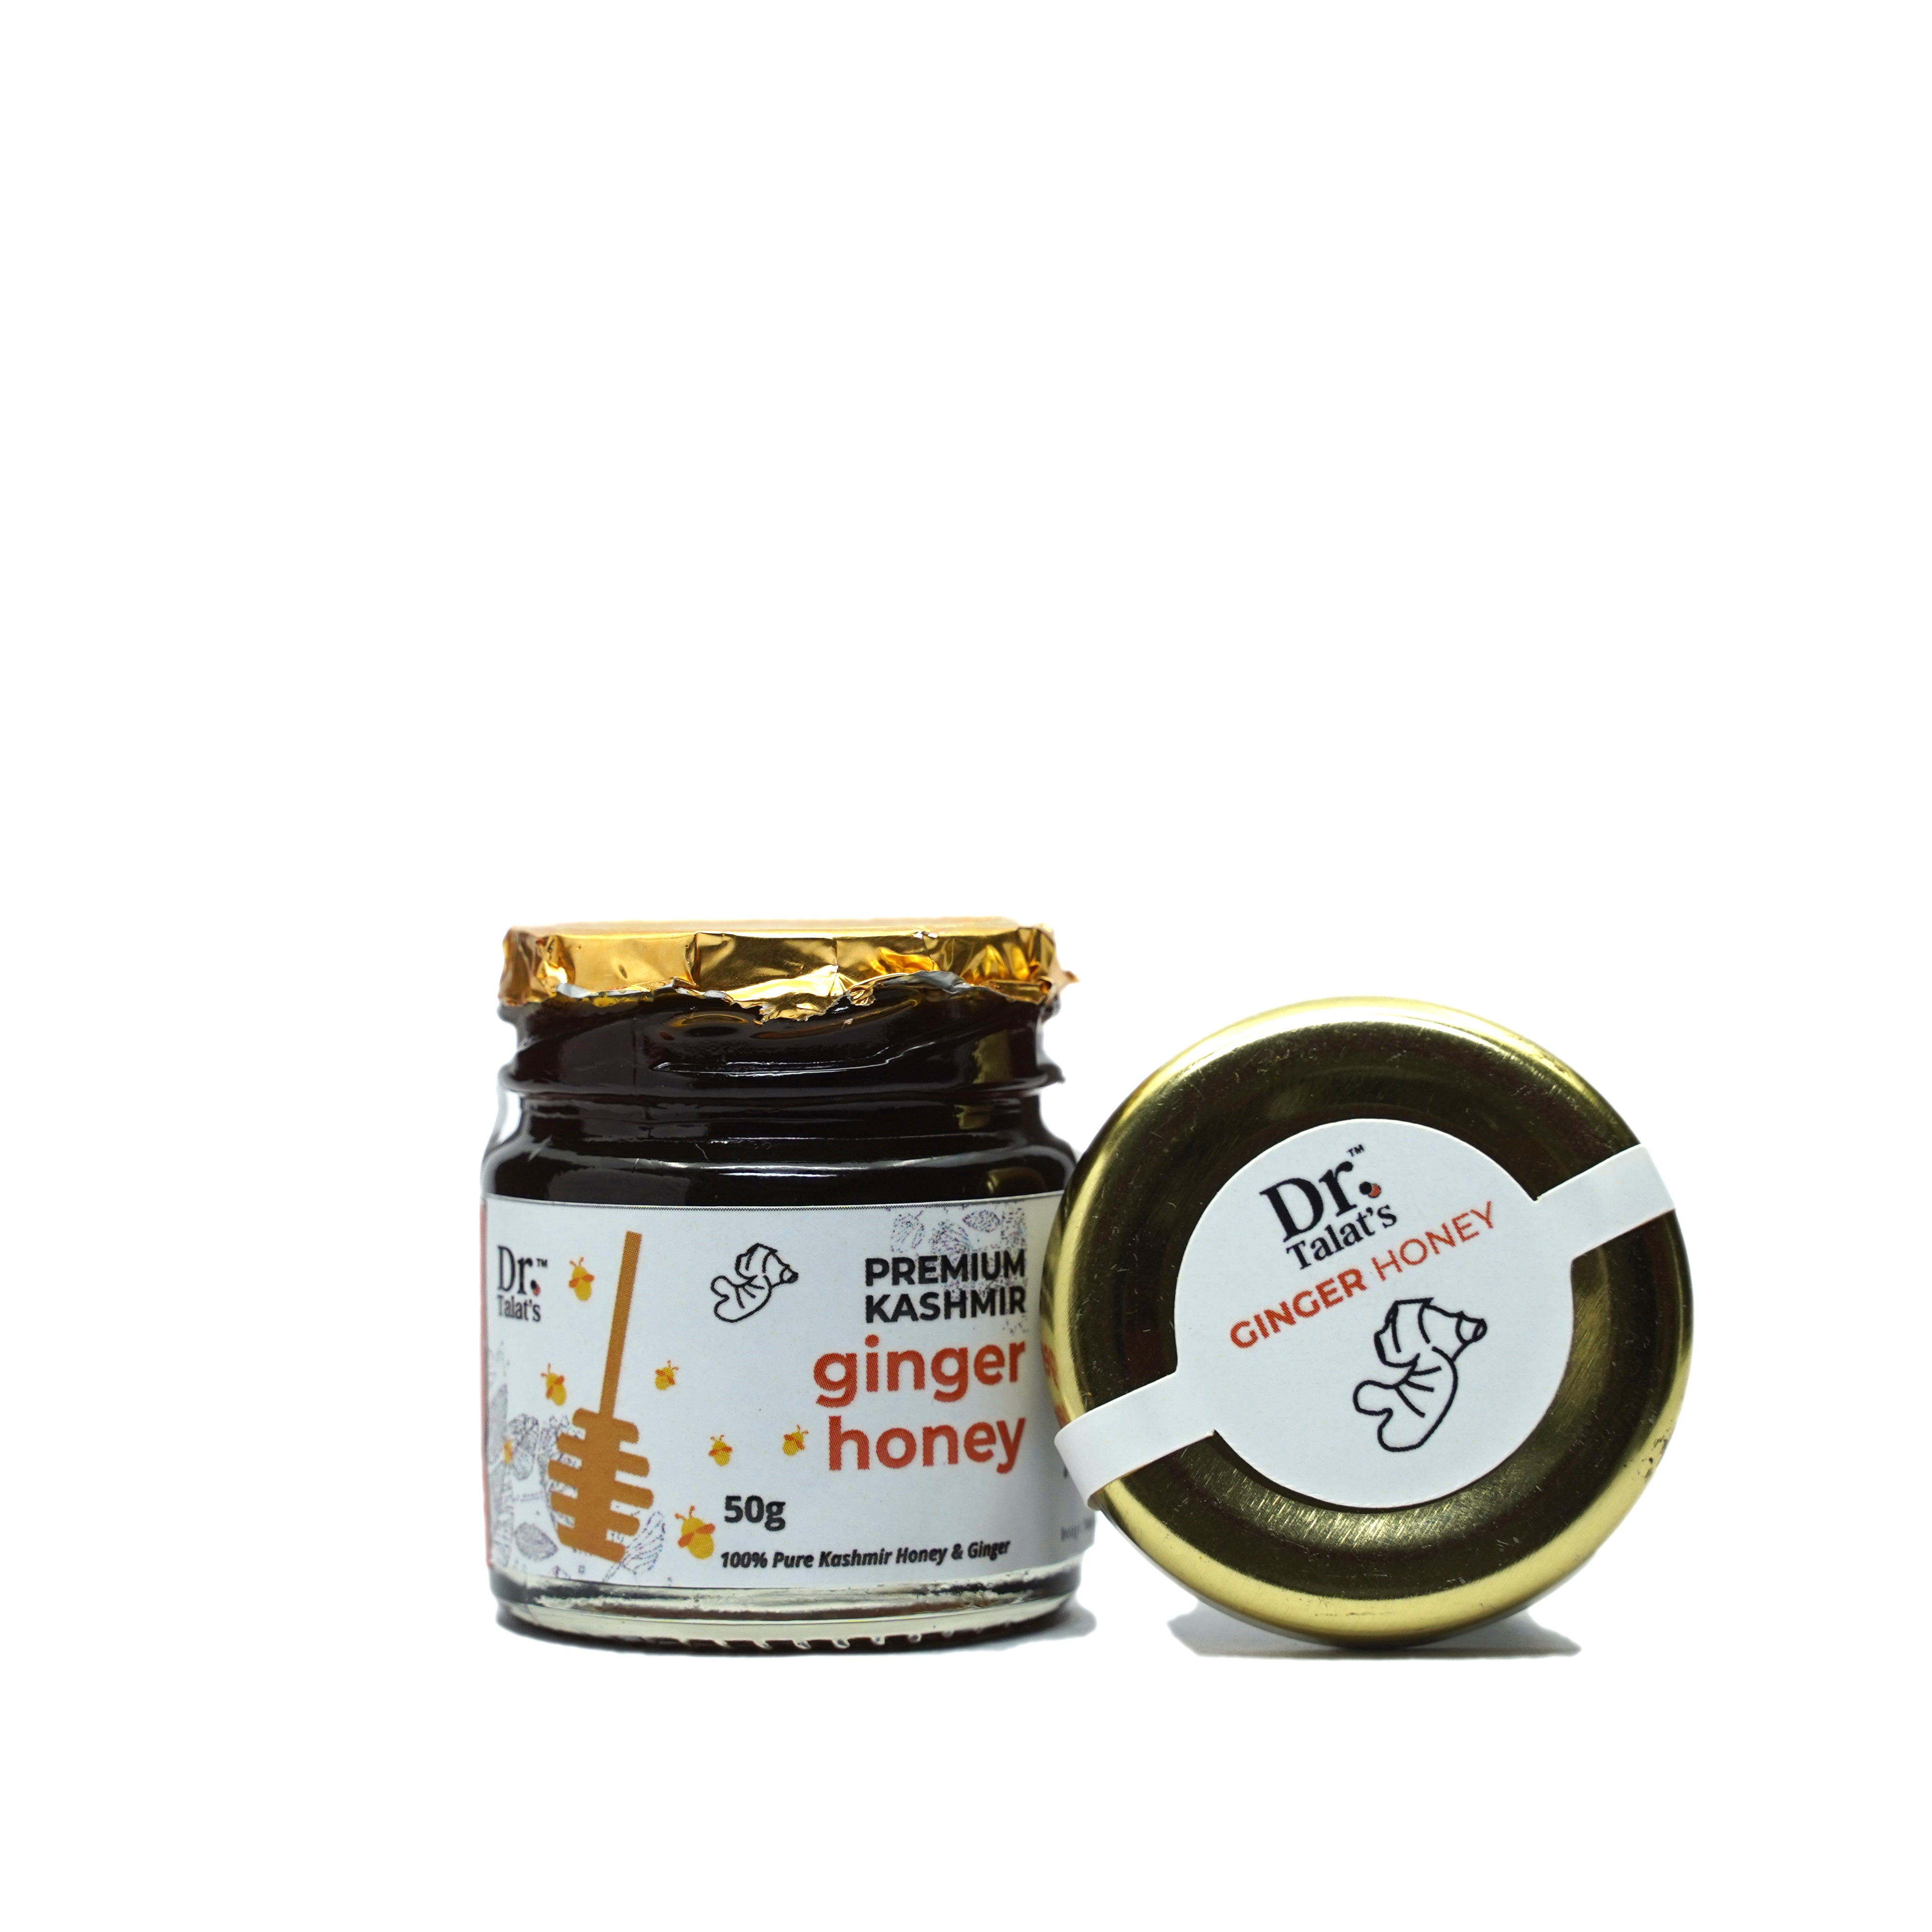 Premium Kashmir Ginger Honey